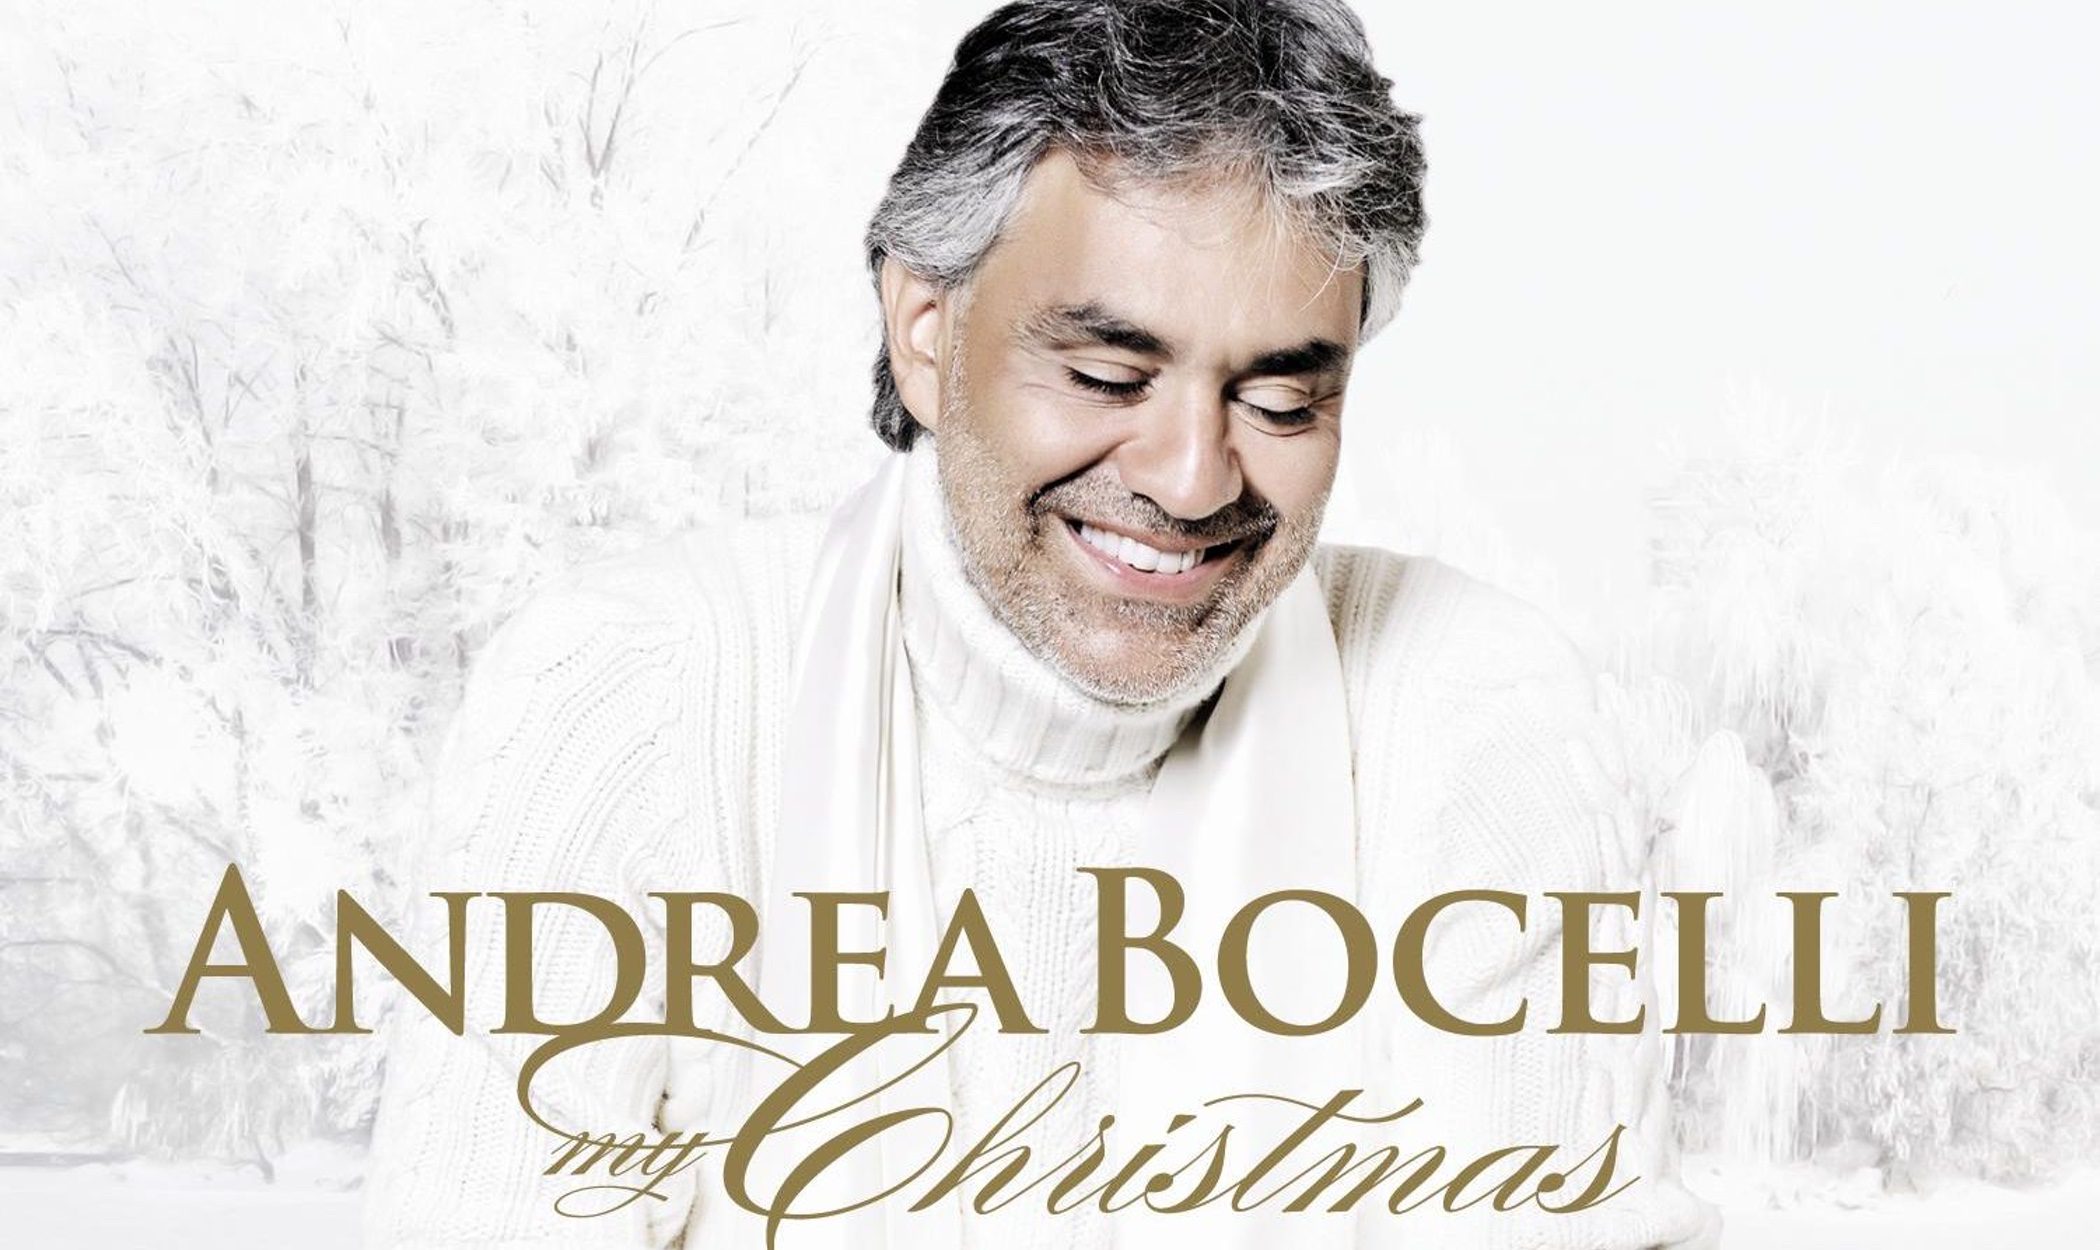 'My Christmas' de Andrea Bocelli, uno de los clásicos de cada navidad